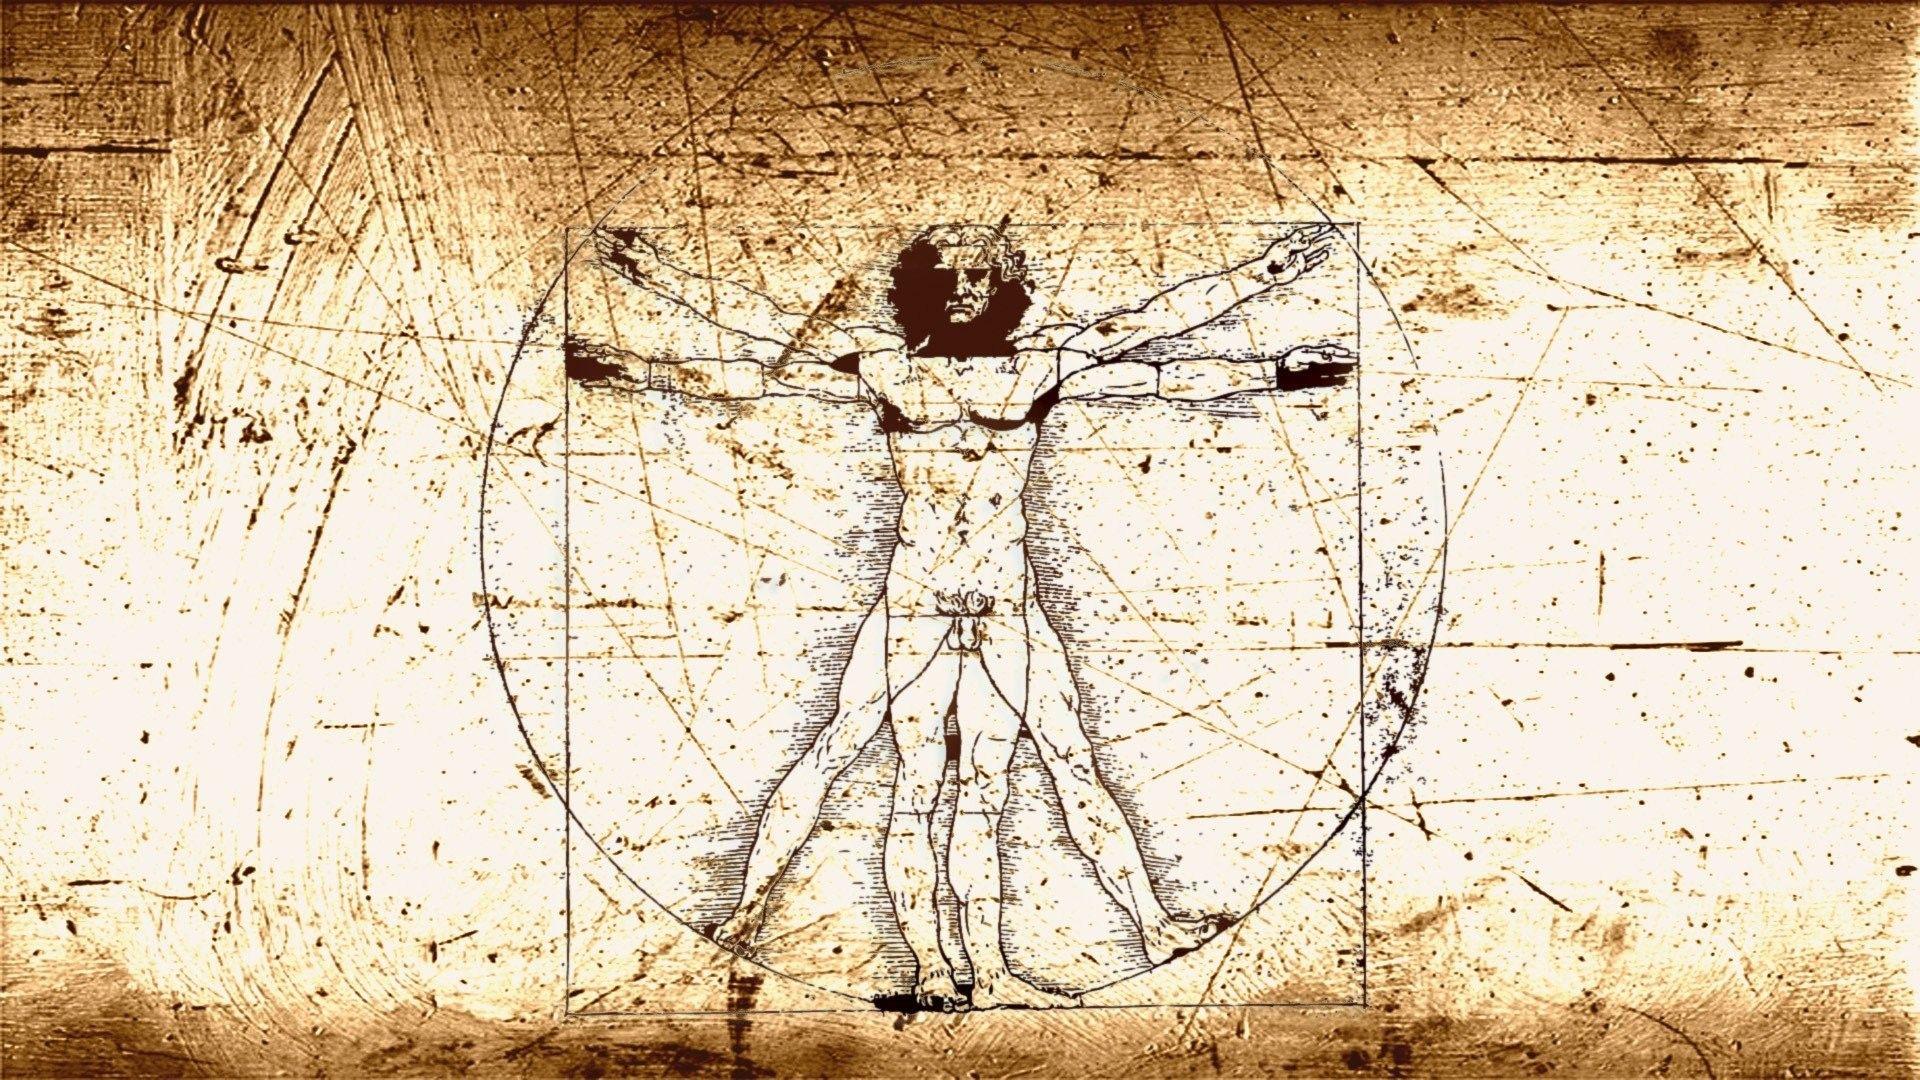 مرد ویترویوسی اثری توسط لئوناردو داوینچی بر طبق تناسبات بدن انسان